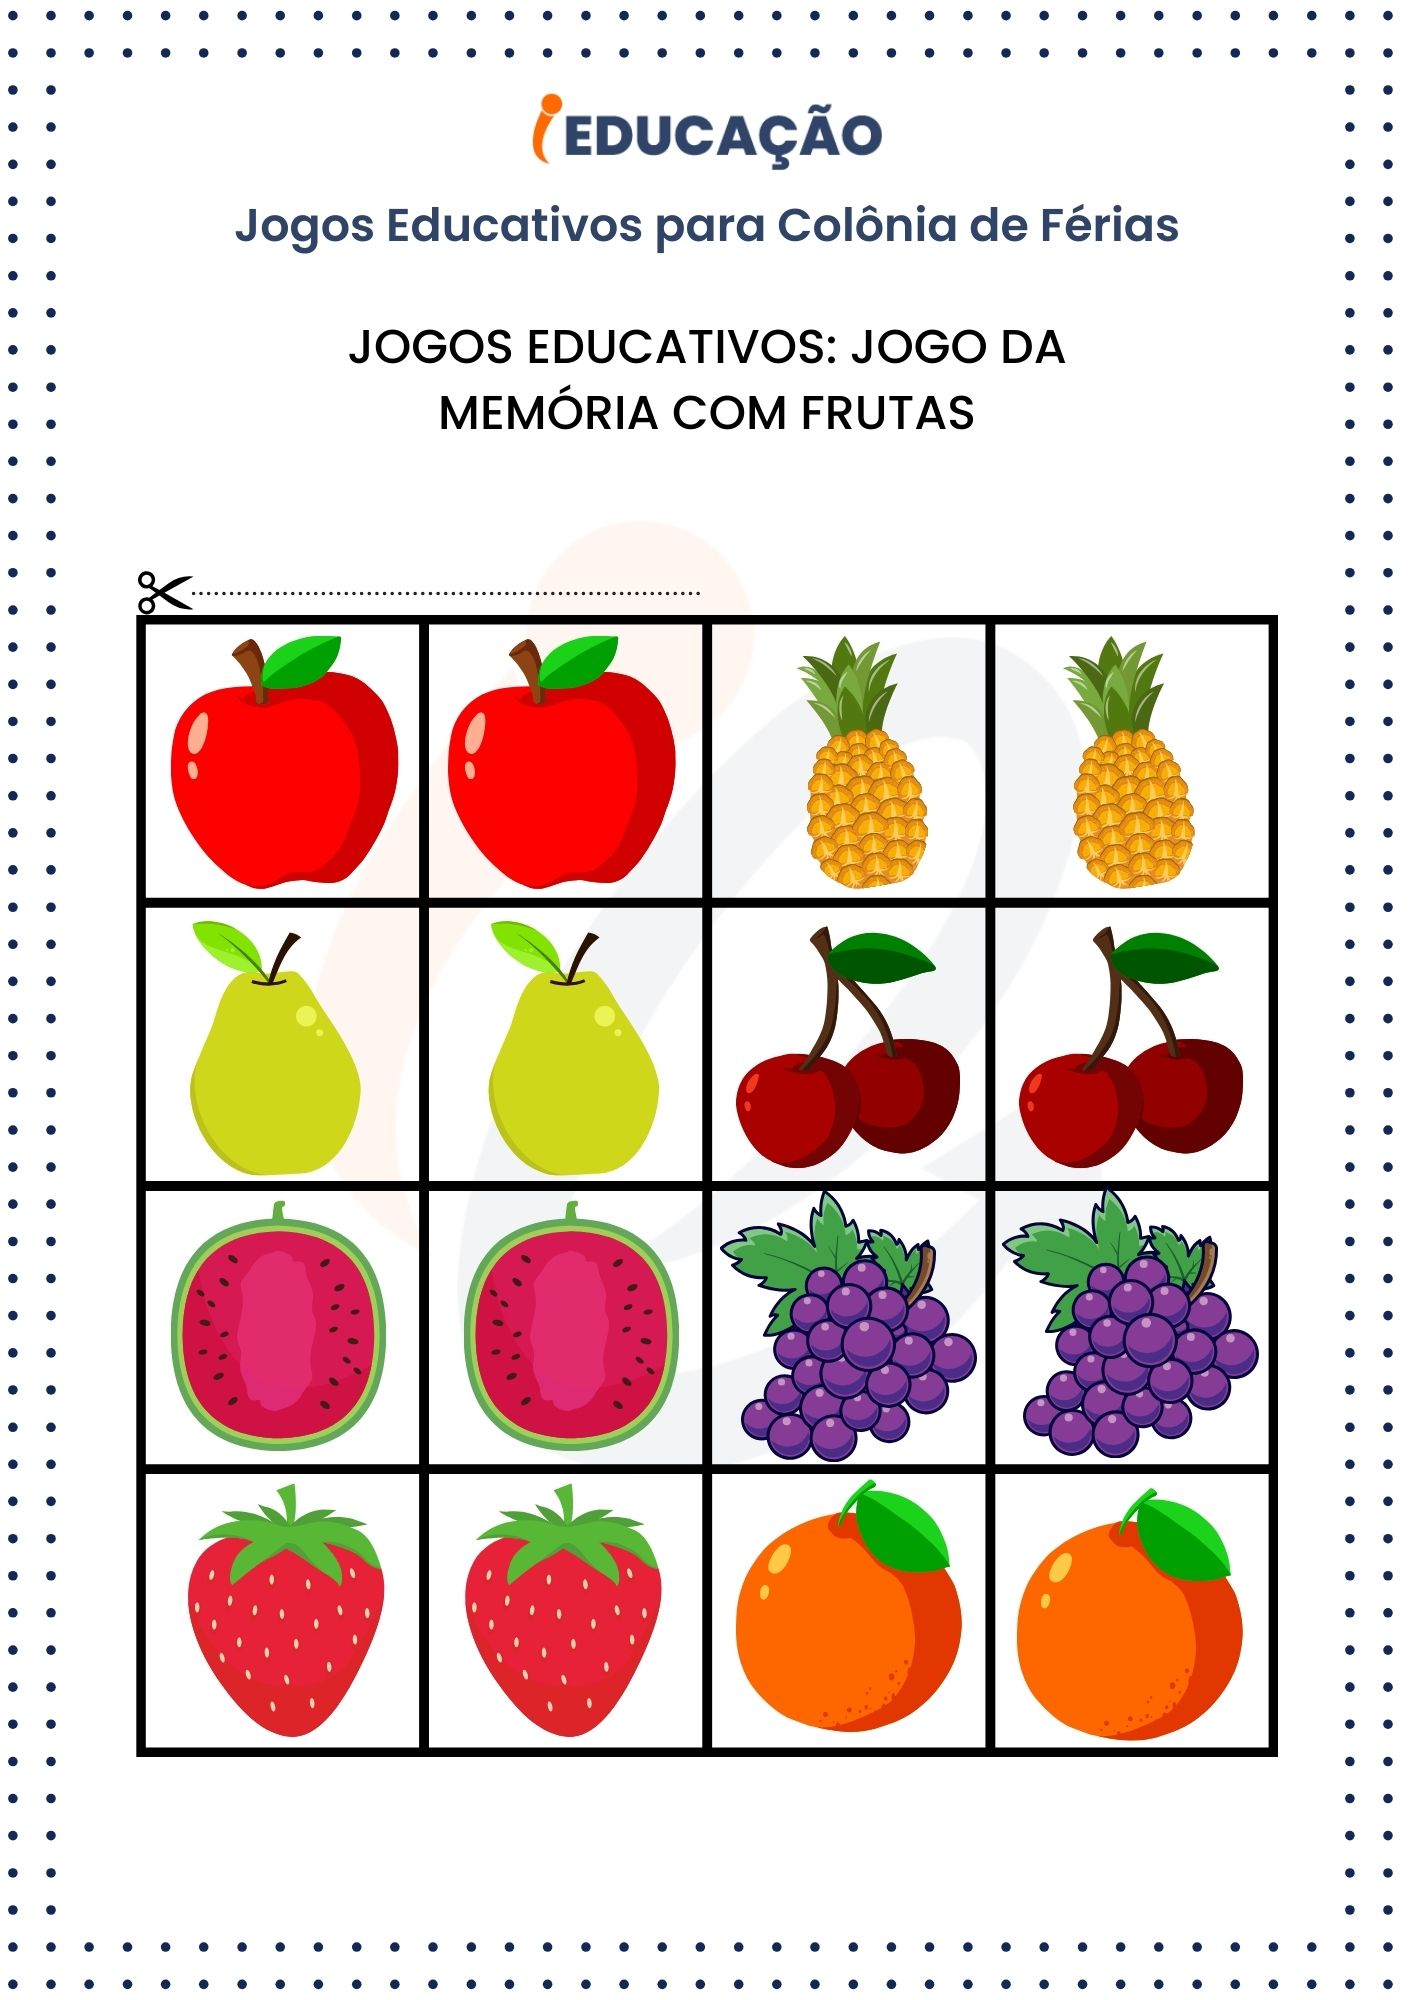 Jogos Educativos para Colônia de Férias: Jogo da Memória com Frutas
